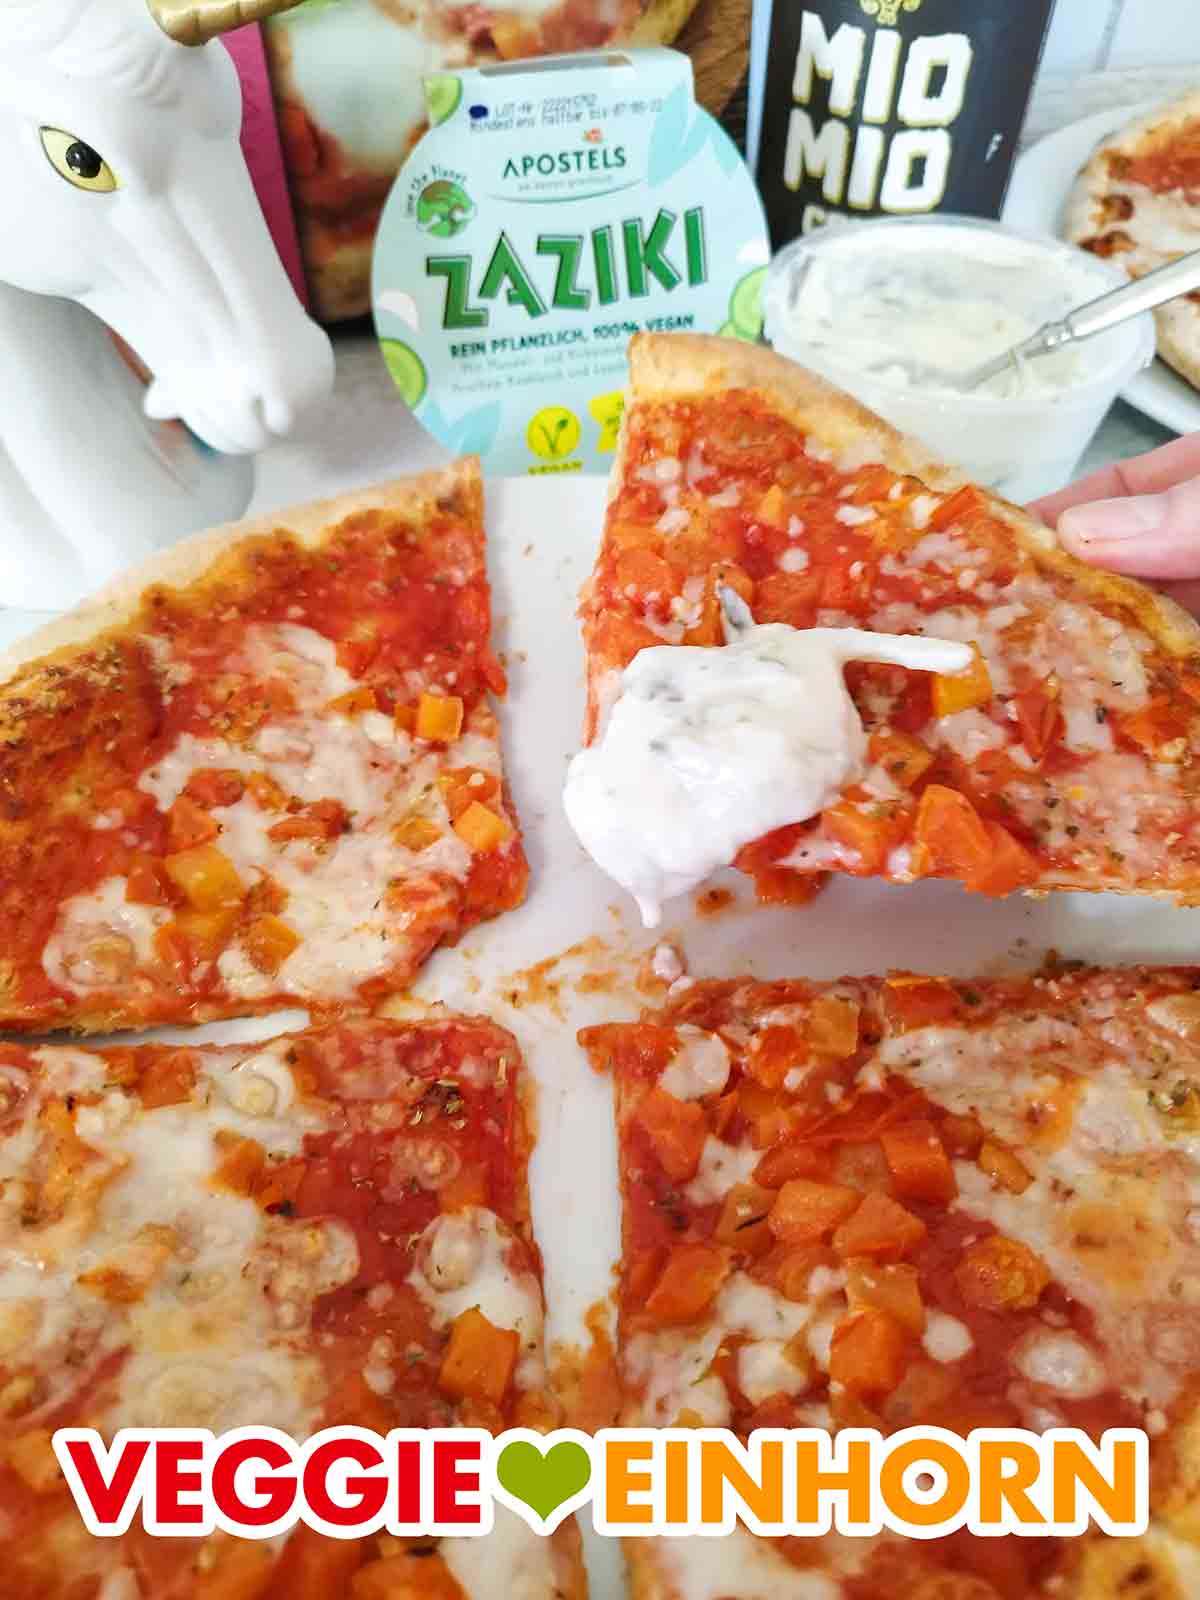 Ein Stück vegane Pizza mit veganem Zaziki von Apostels